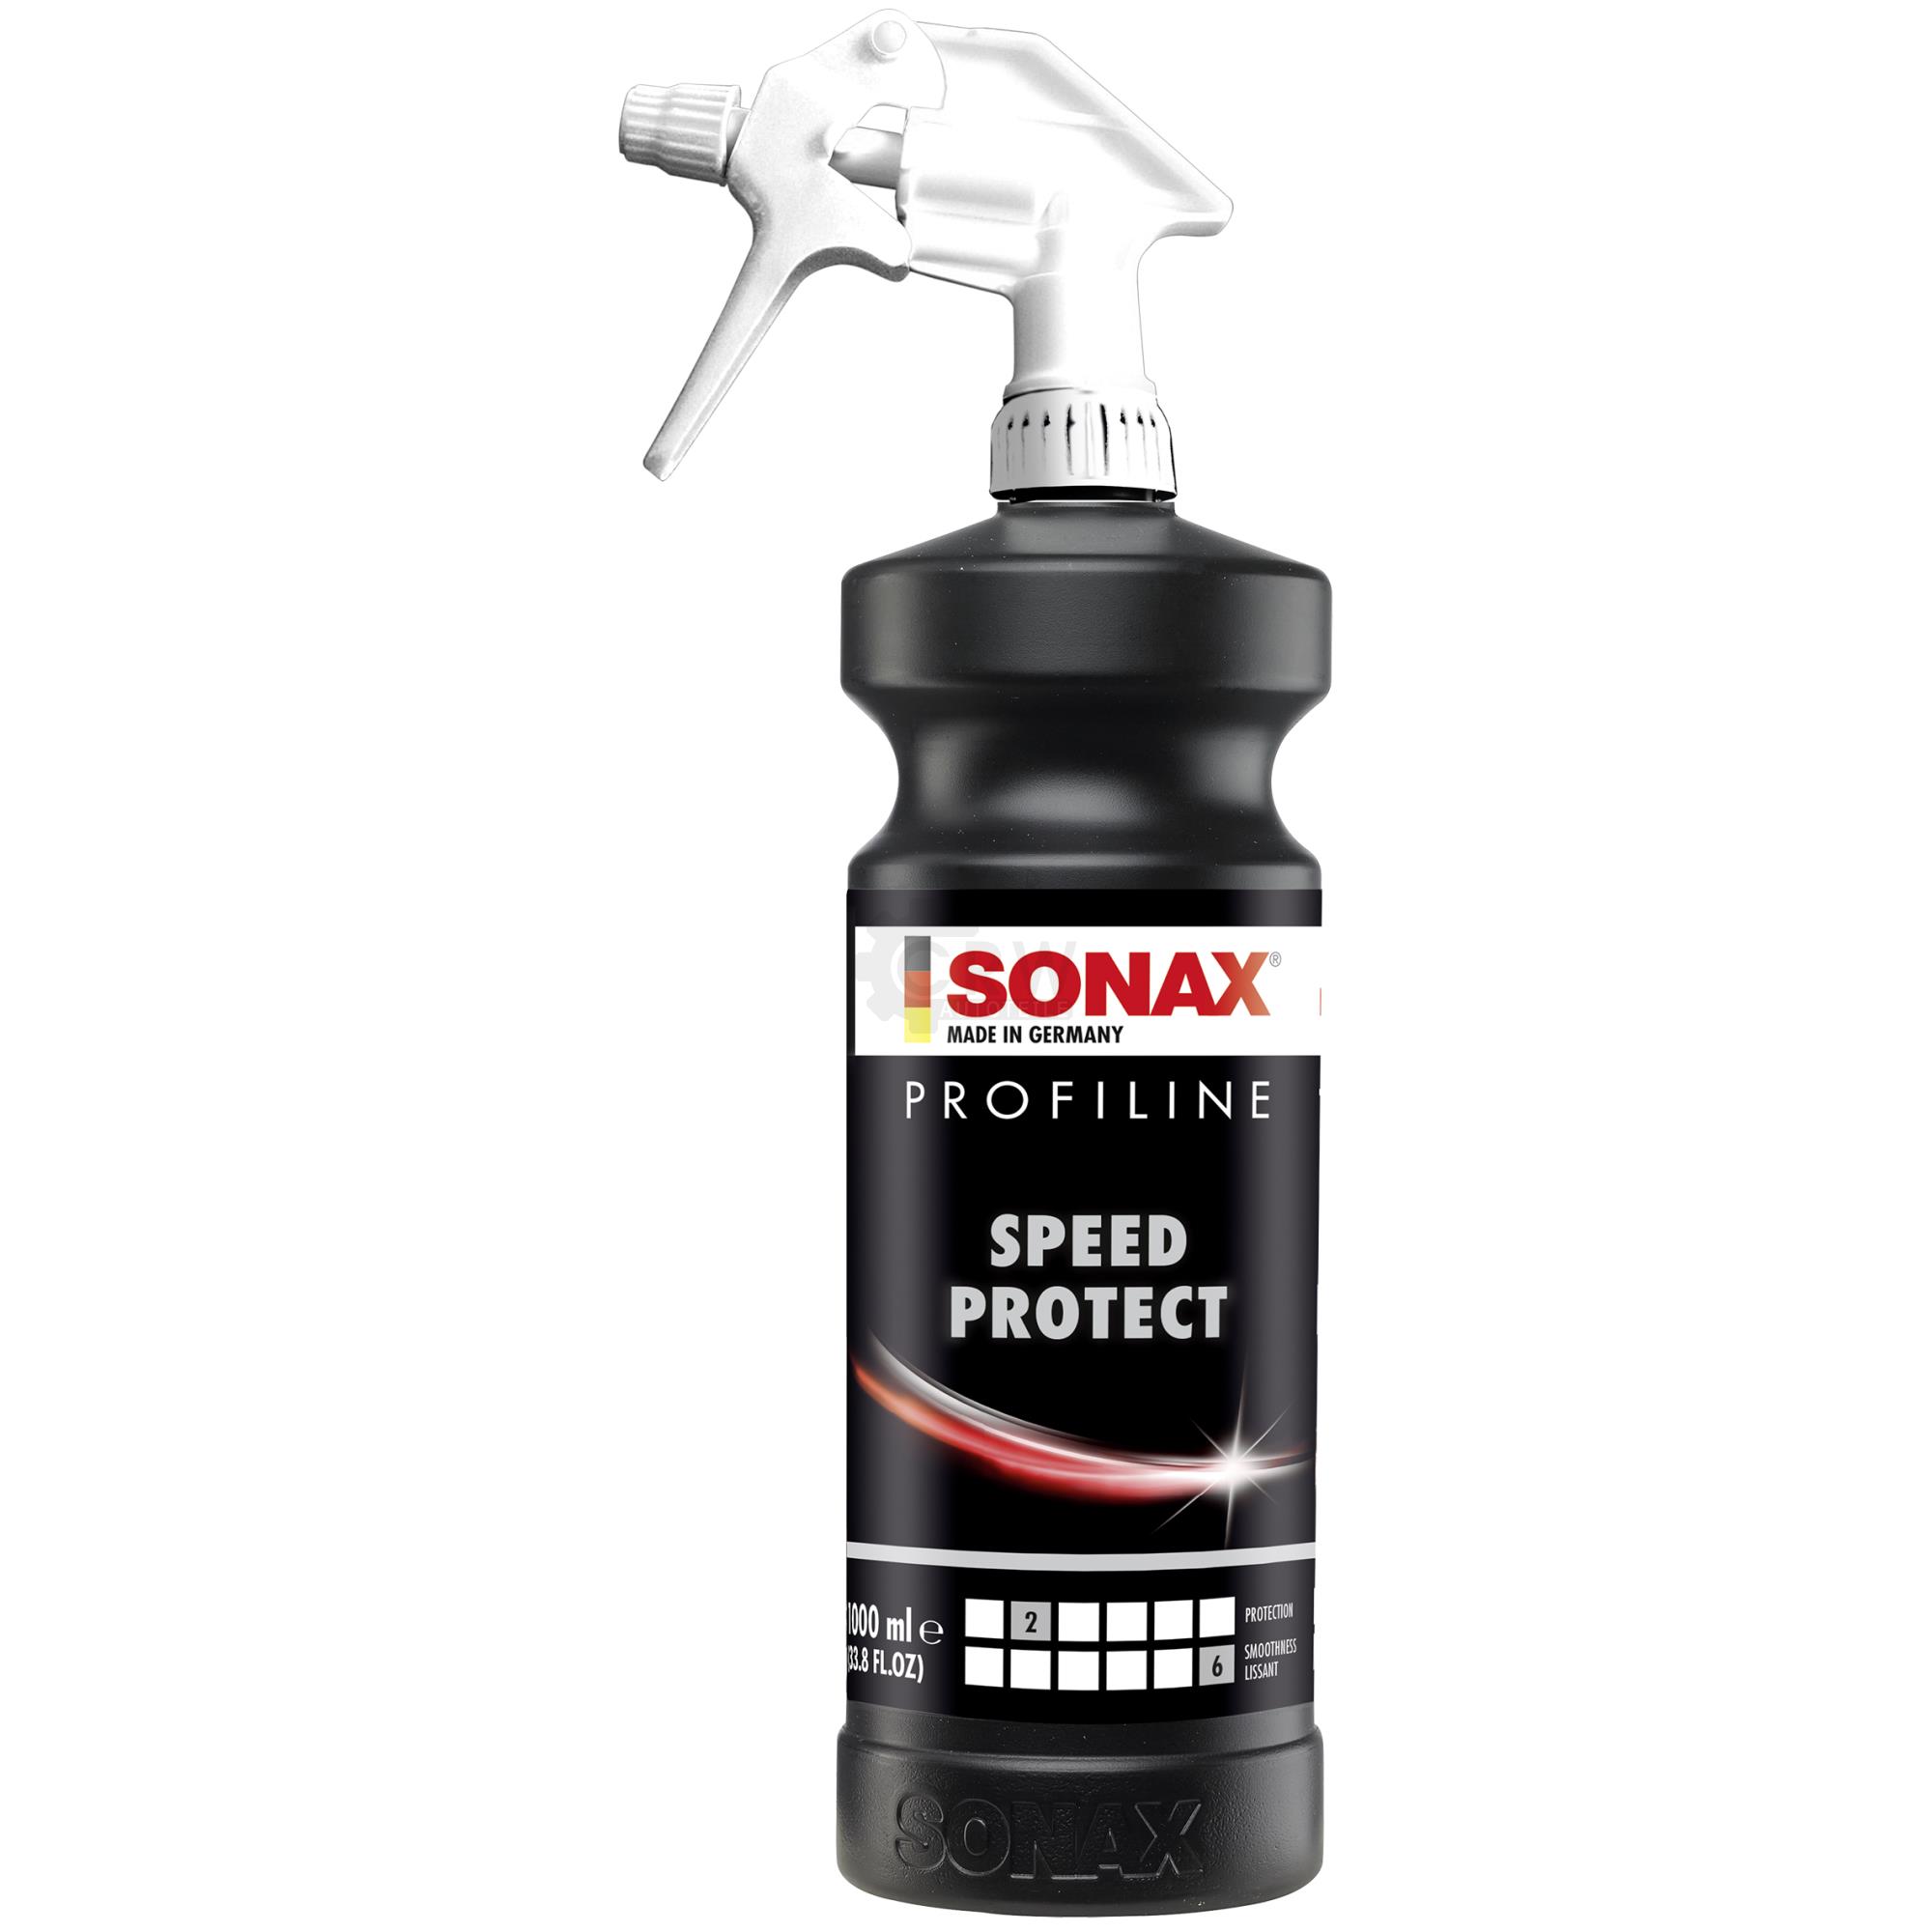 SONAX PROFILINE SpeedProtect Schnellkonservierung Finish Spray Carnauba 1L